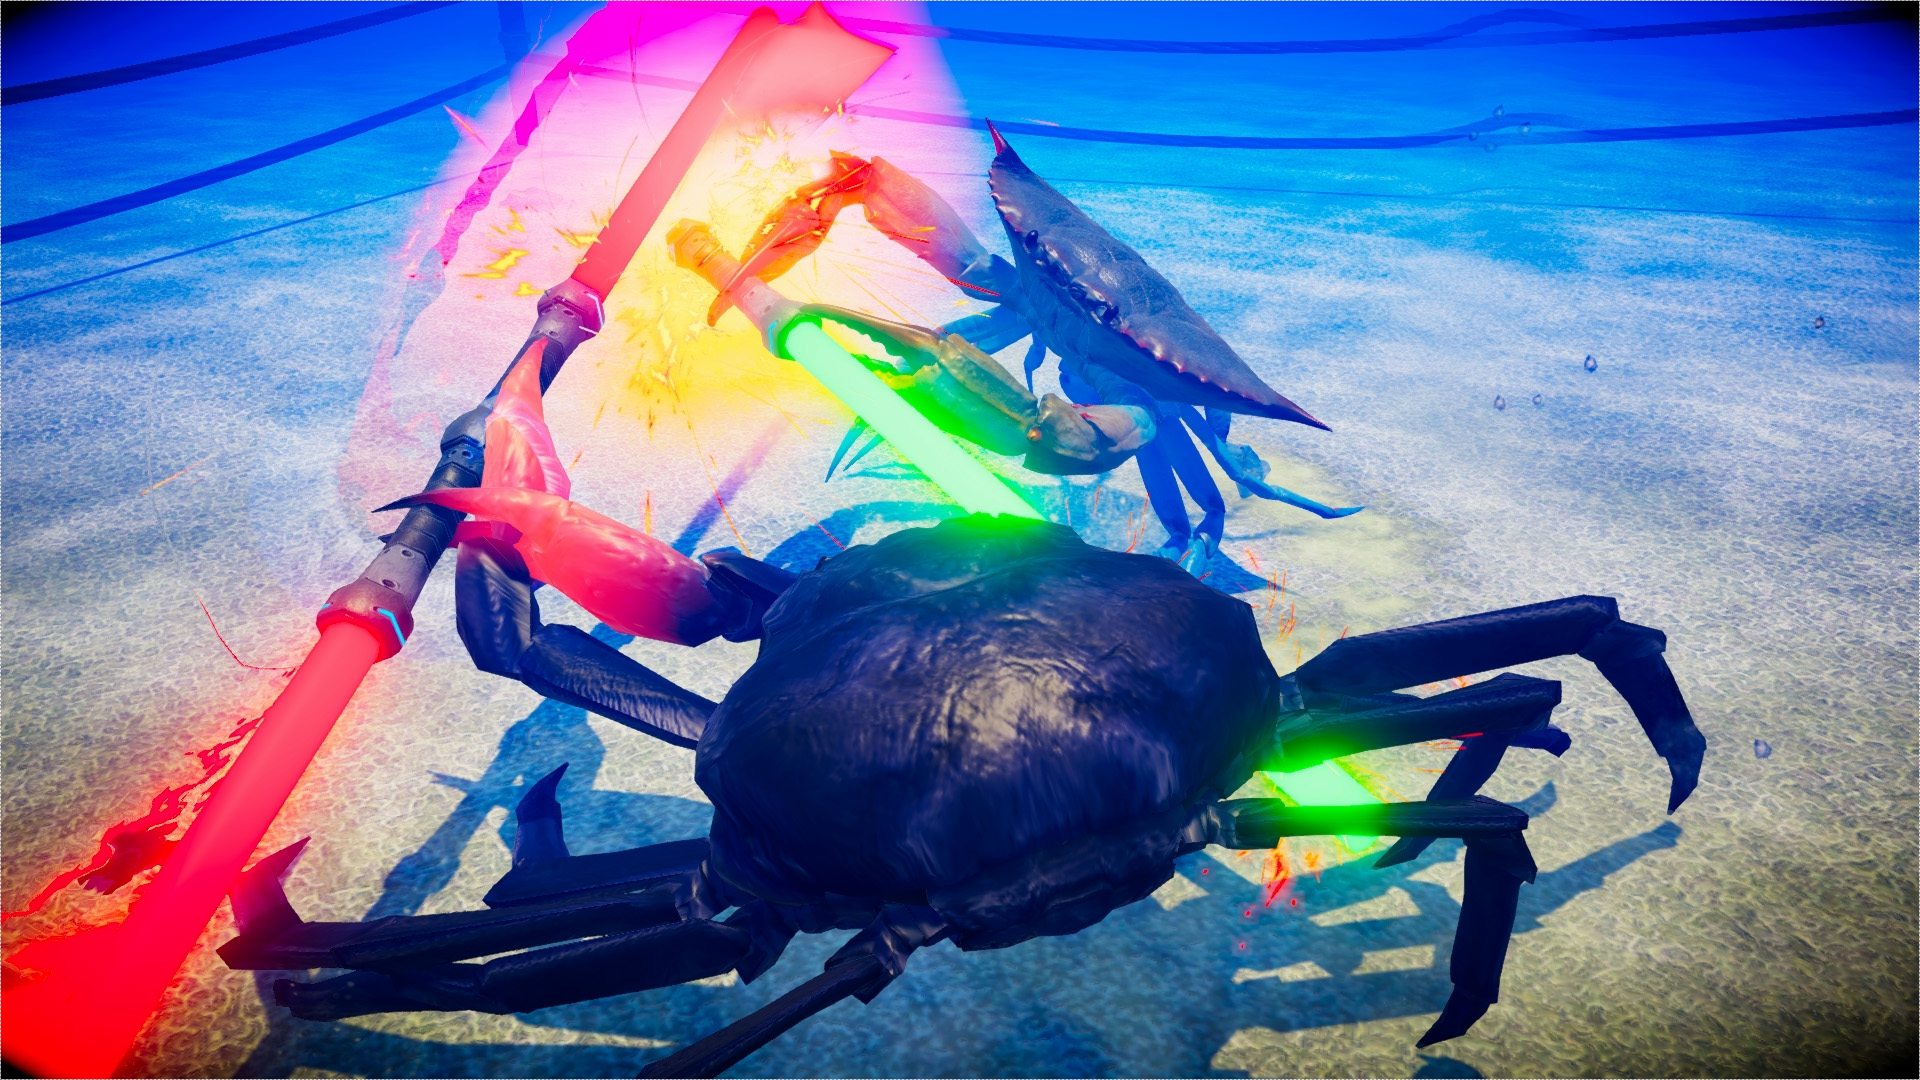 Face insane crustacean based combat in Fight Crab